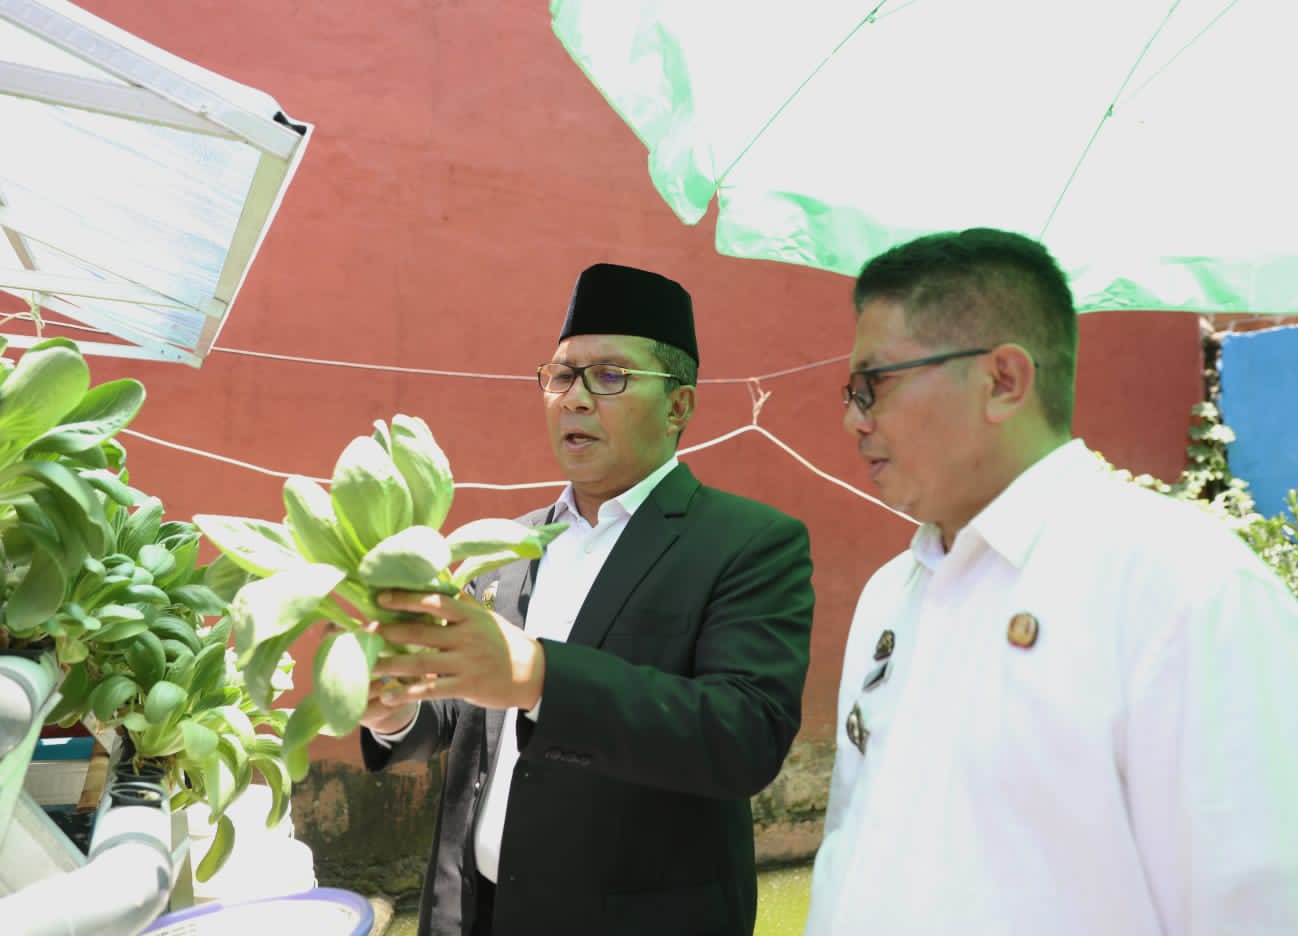 Wali Kota Makassar Imbau Warga Manfaatkan Lahan Kosong untuk Bercocok Tanam